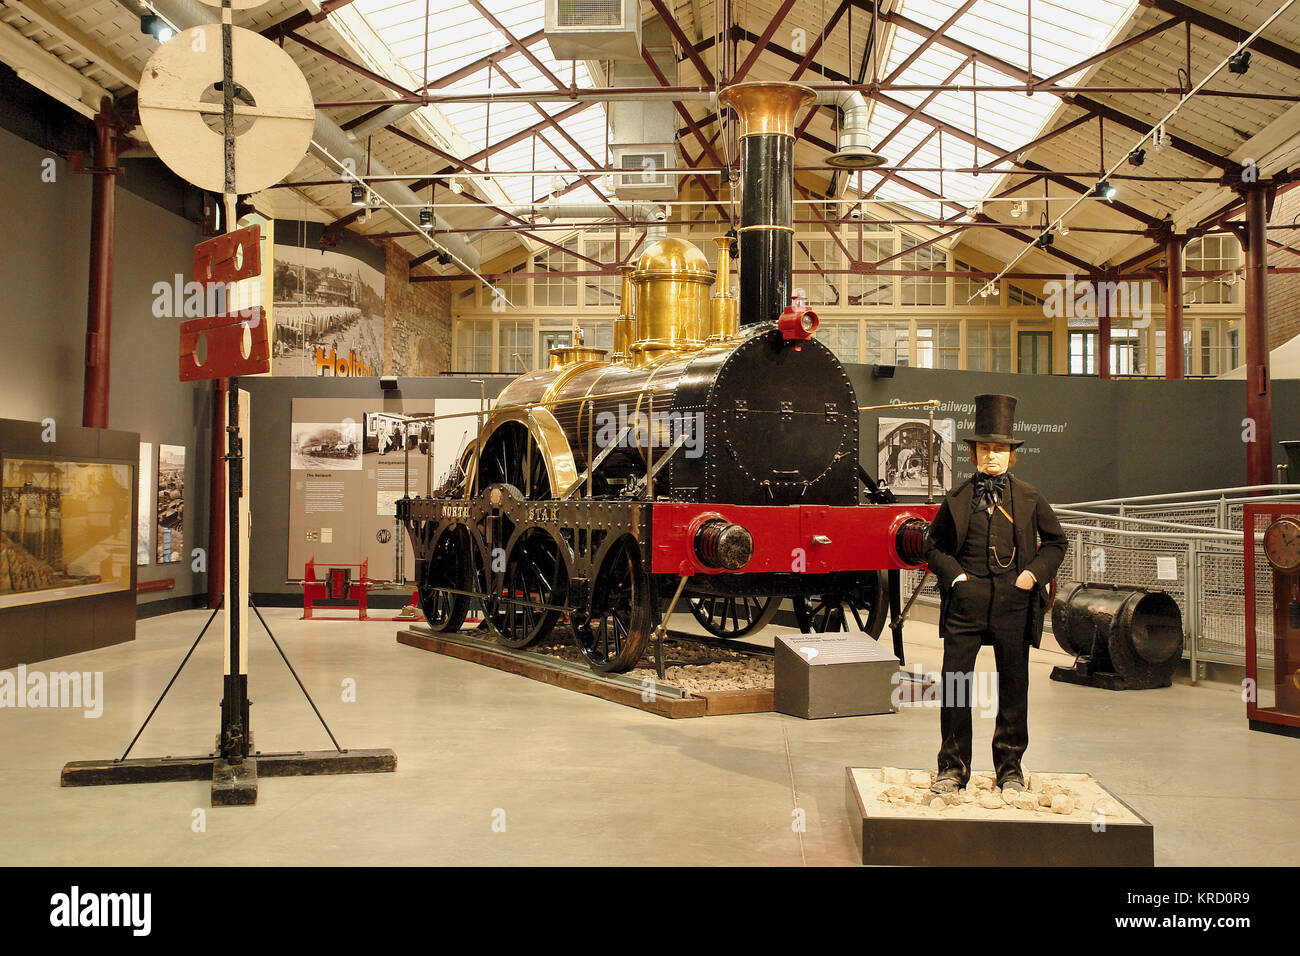 Una mostra incentrata su Isambard Kingdom Brunel al Swindon Steam Railway Museum. Dietro il modello di Brunel si trova la North Star, una locomotiva. Foto Stock